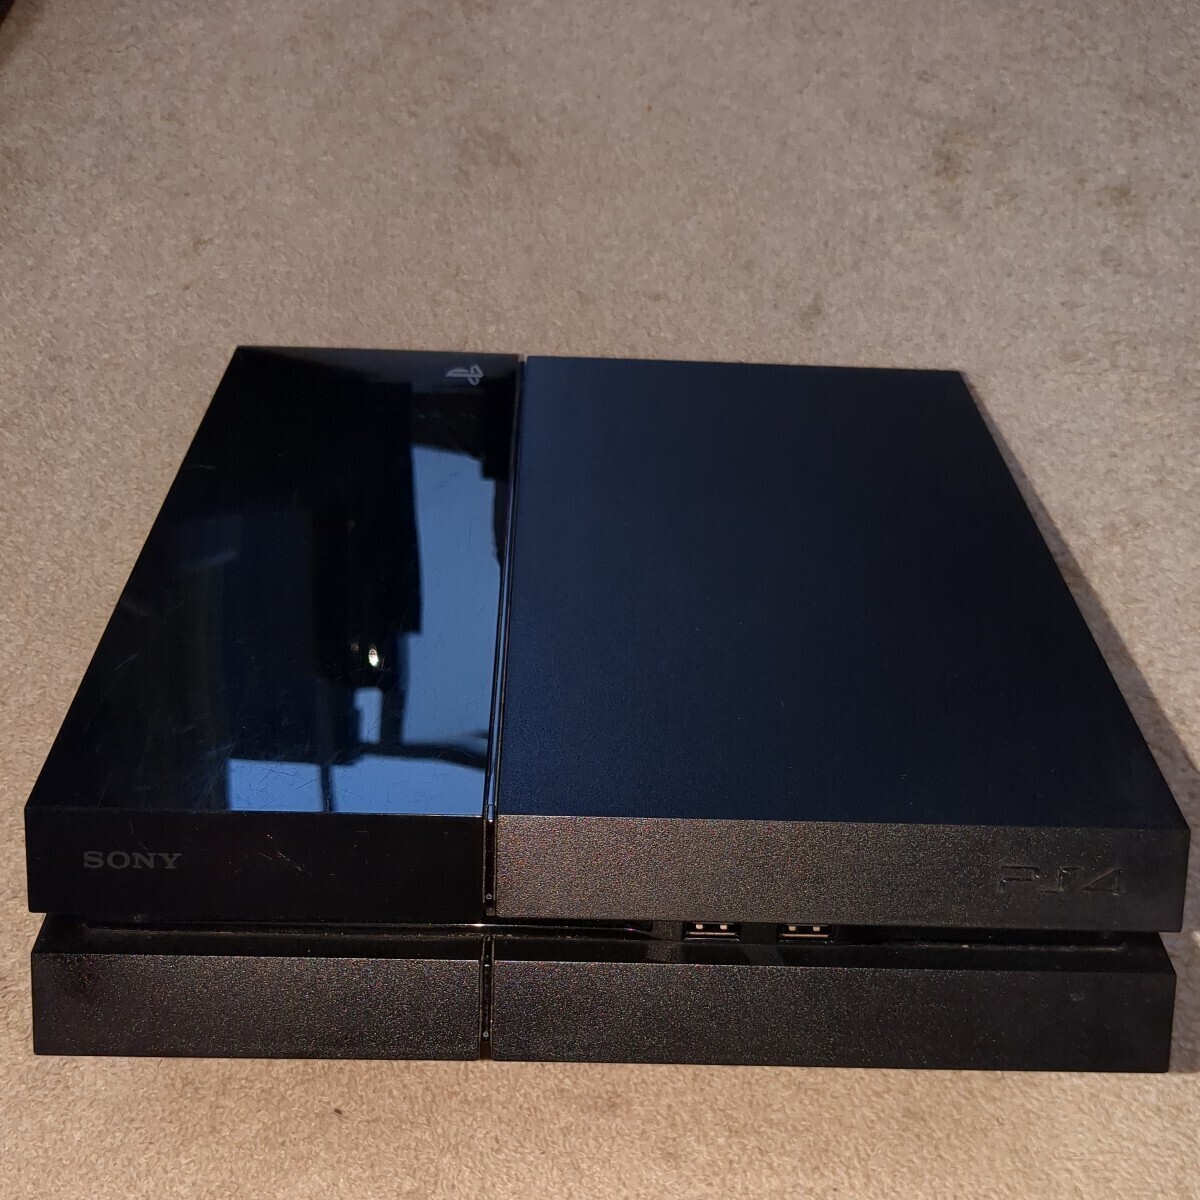  Sony PlayStation 4 used CUH-1100A black 500GB